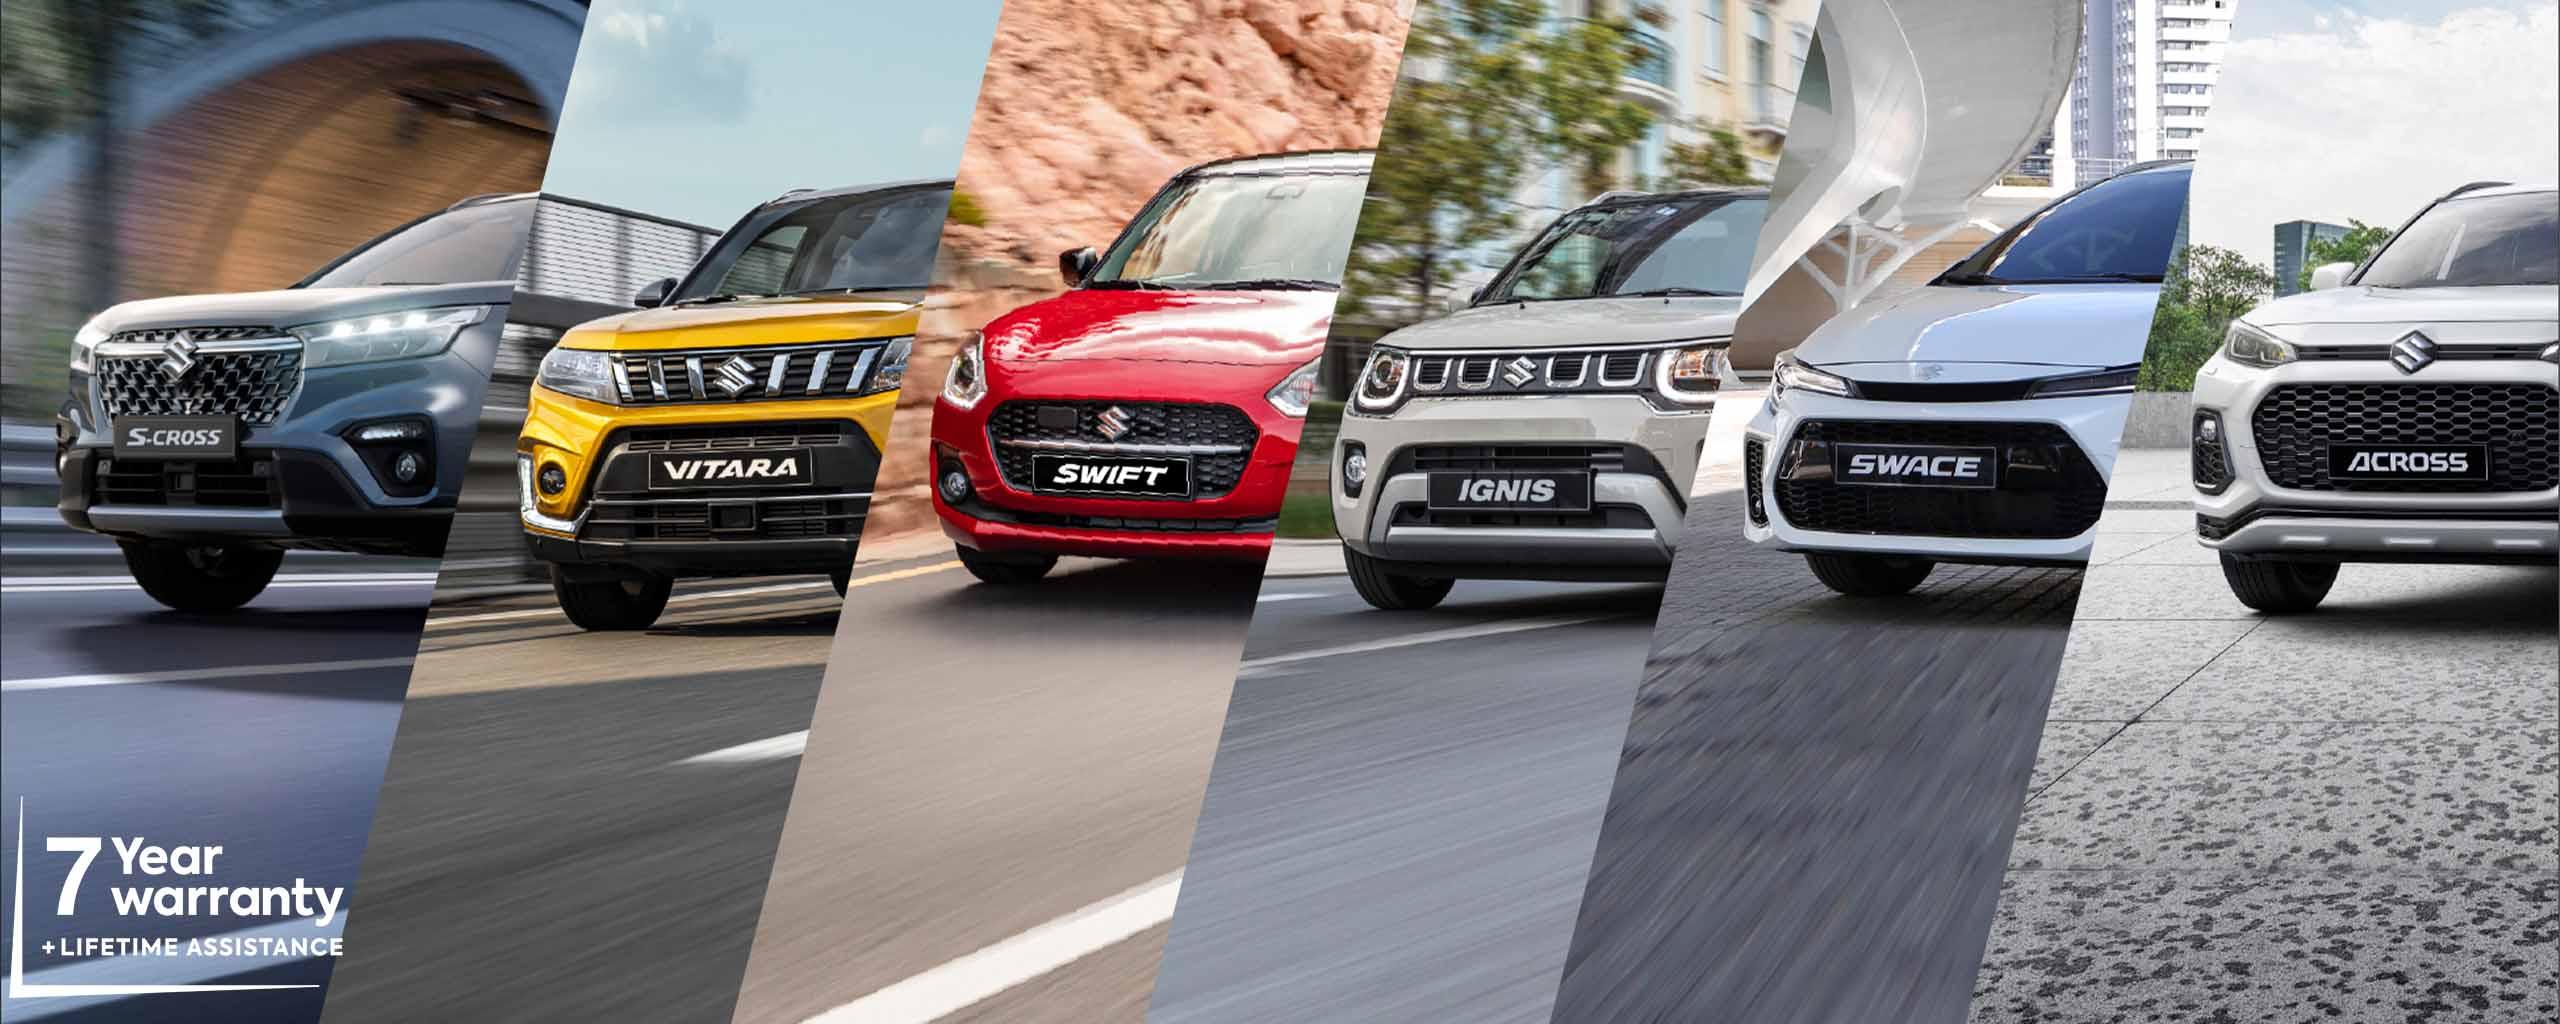 Suzuki: Une nouvelle voiture adaptée à votre budget